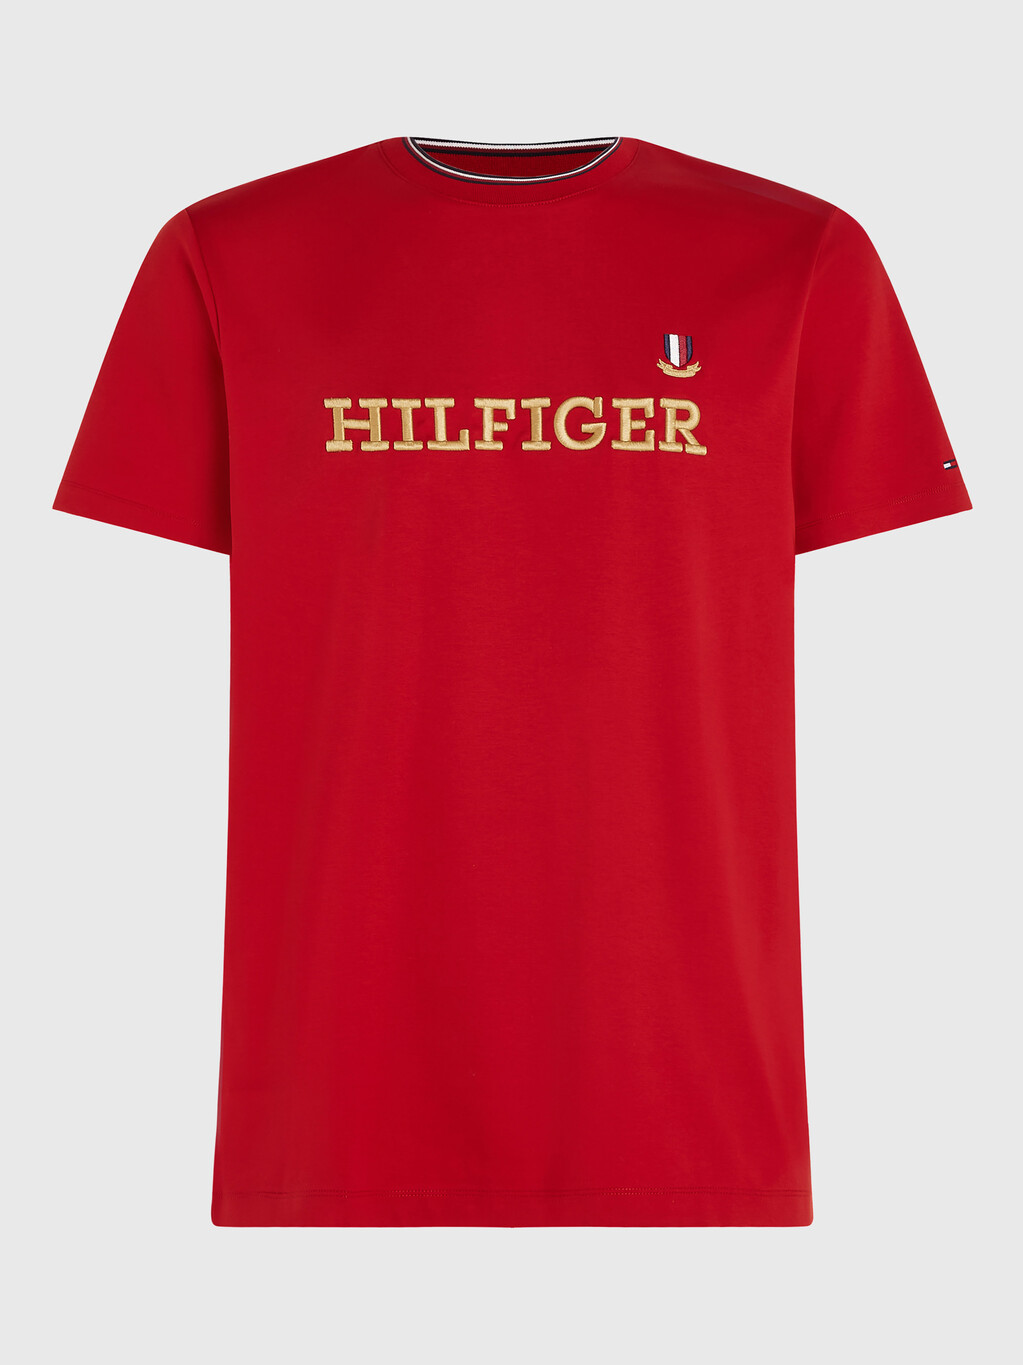 Hilfiger 標誌 T 恤, Arizona Red, hi-res